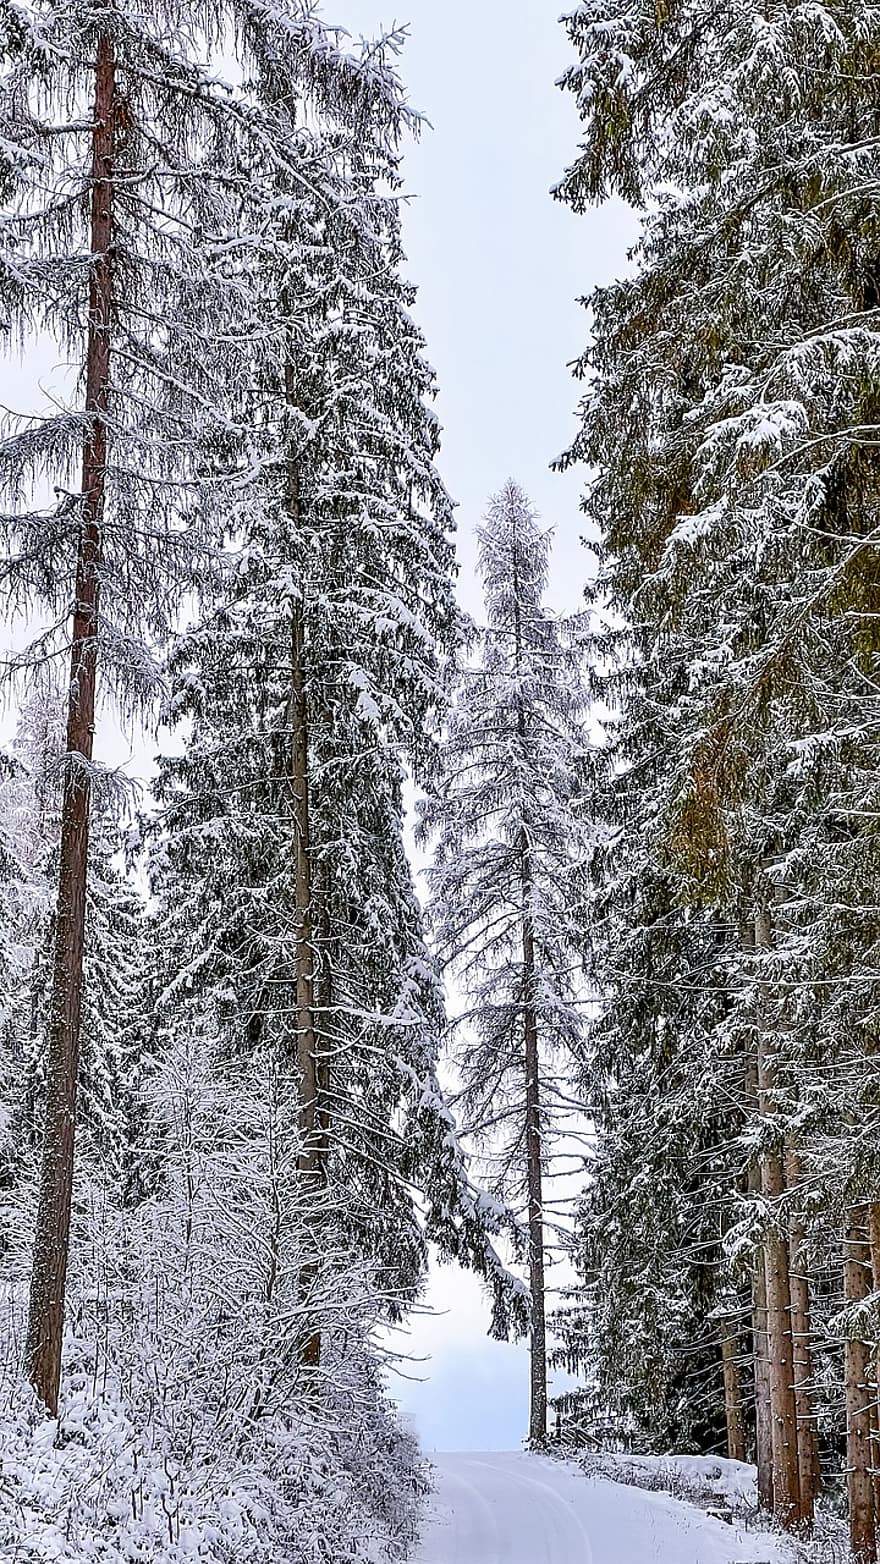 téli, Ausztria, erdő, hegy, hó, tájkép, fa, évszak, fenyőfa, fagy, jég